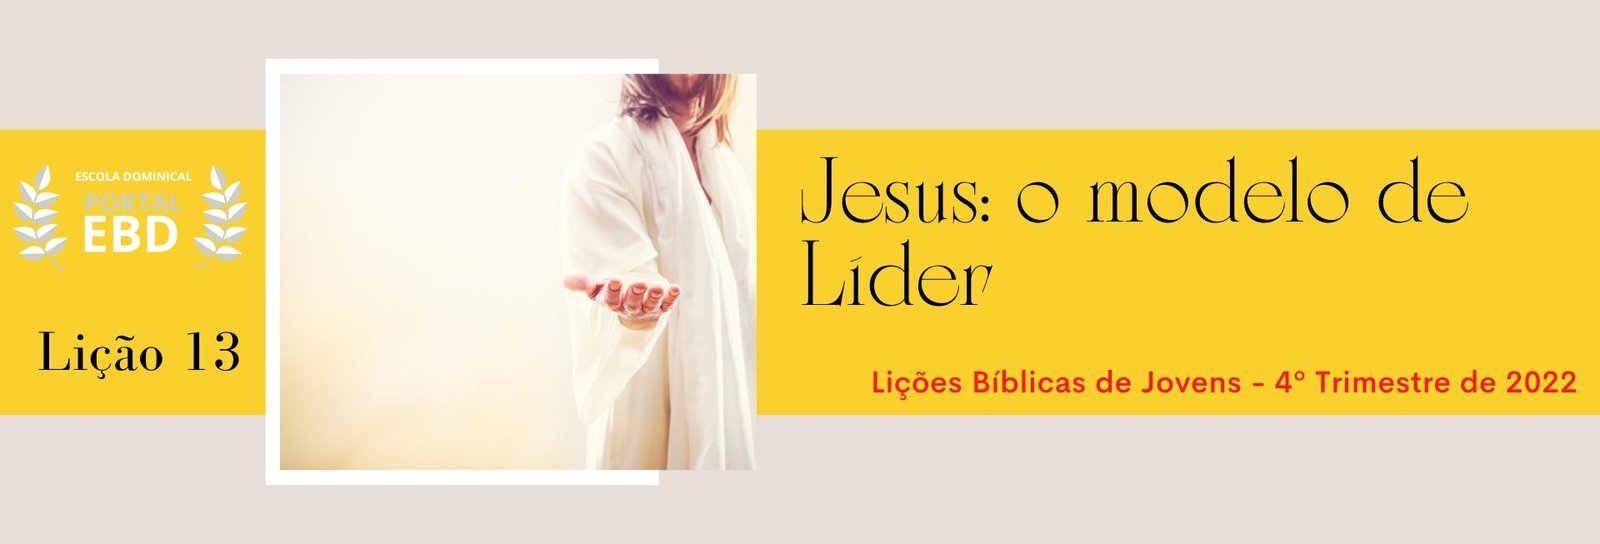 Lição 13 - Jesus: o modelo de líder  -  SLIDES E VIDEOAULAS 